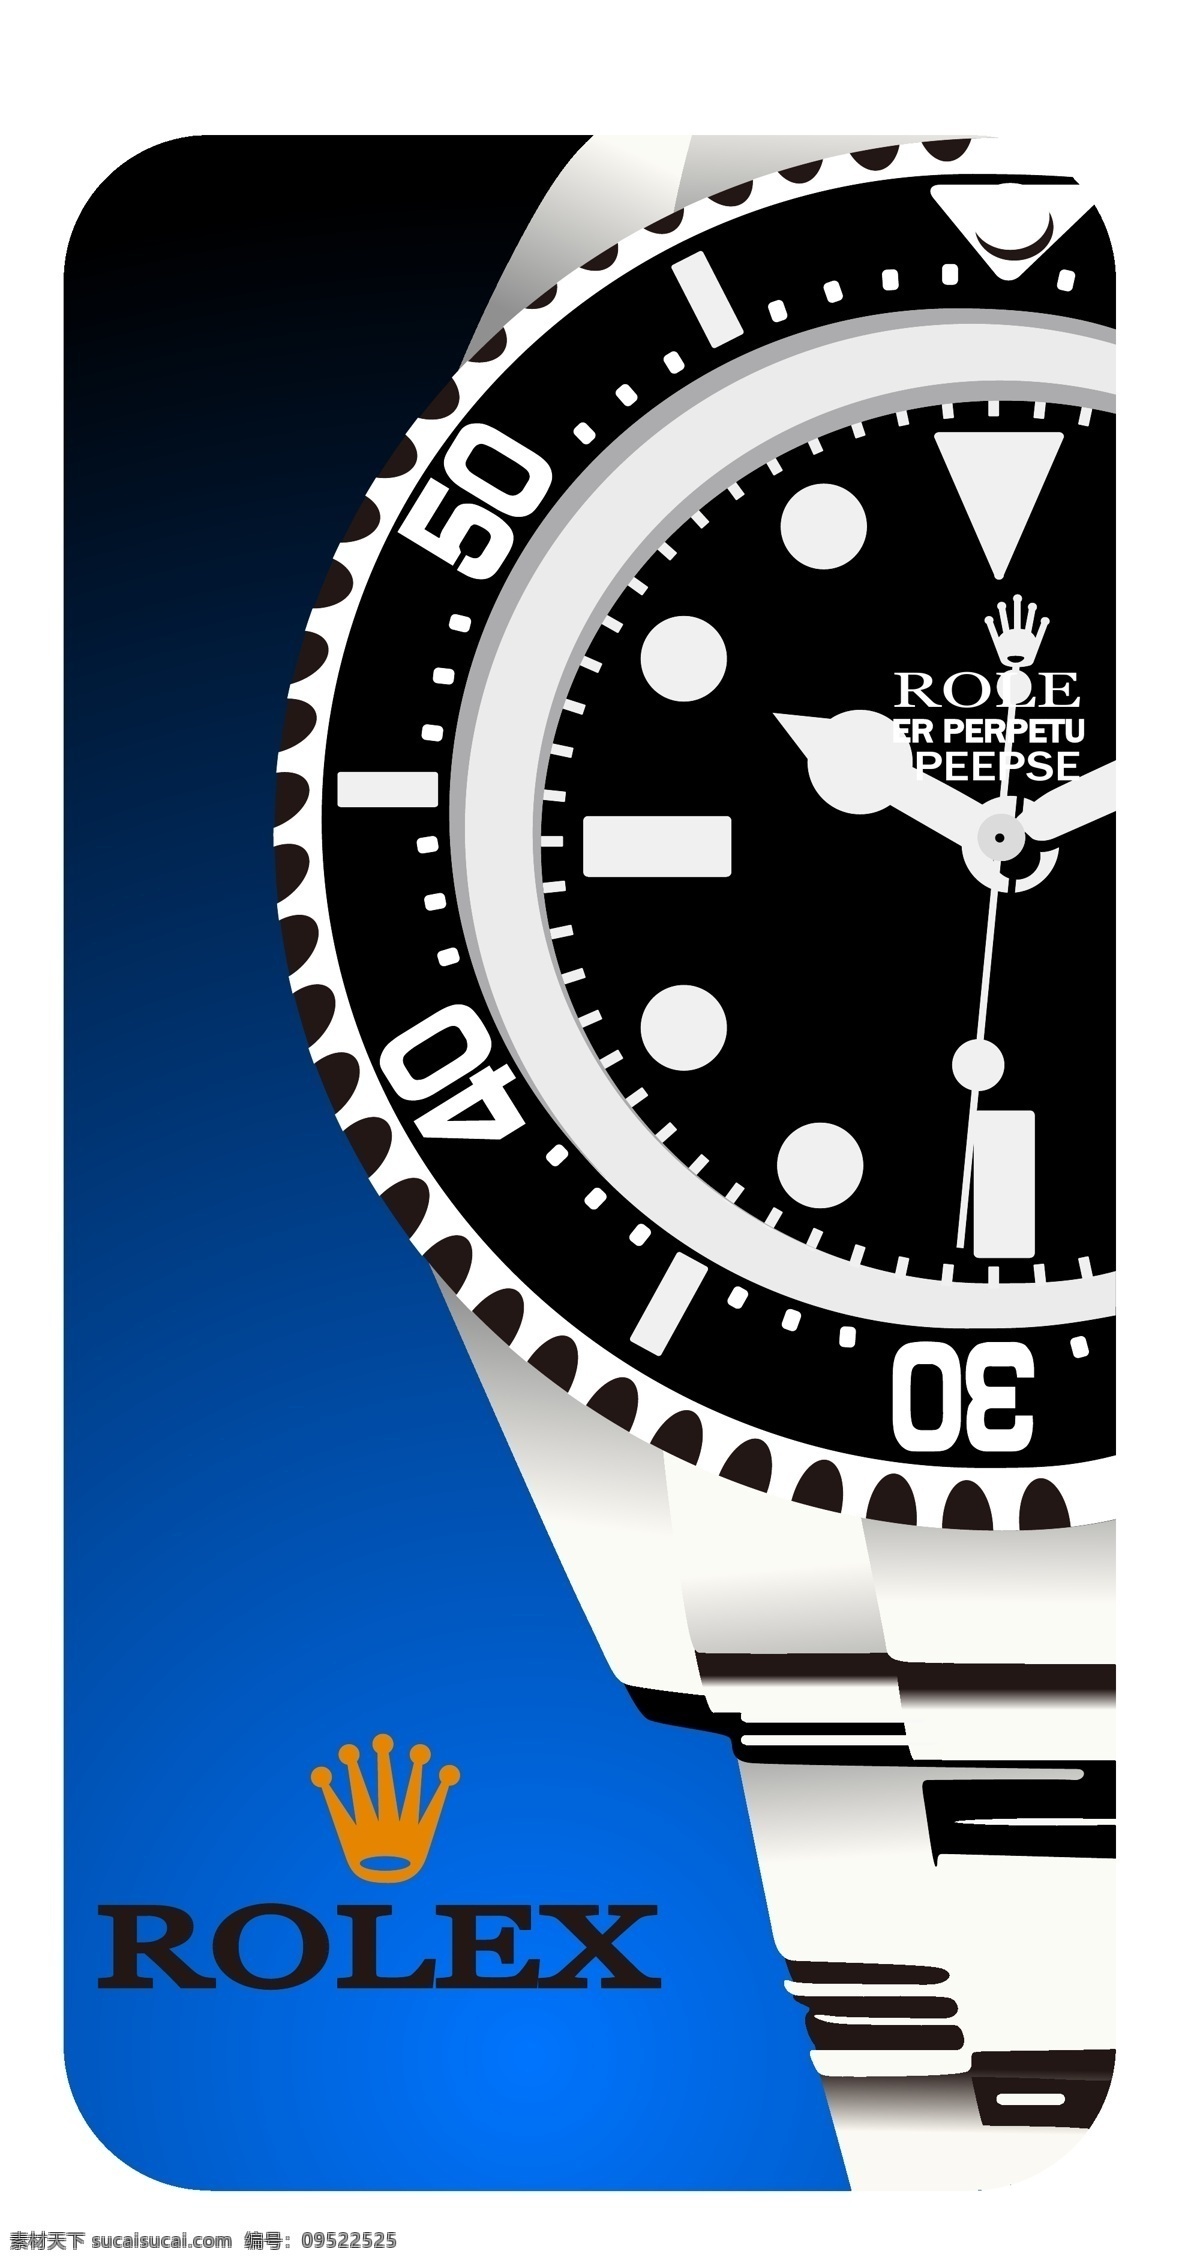 劳力士手表 劳力士 rolex 手表 钟表 矢量 广告 机械 瑞士名表 logo标志 标识 图标 公共标识标志 标识标志图标